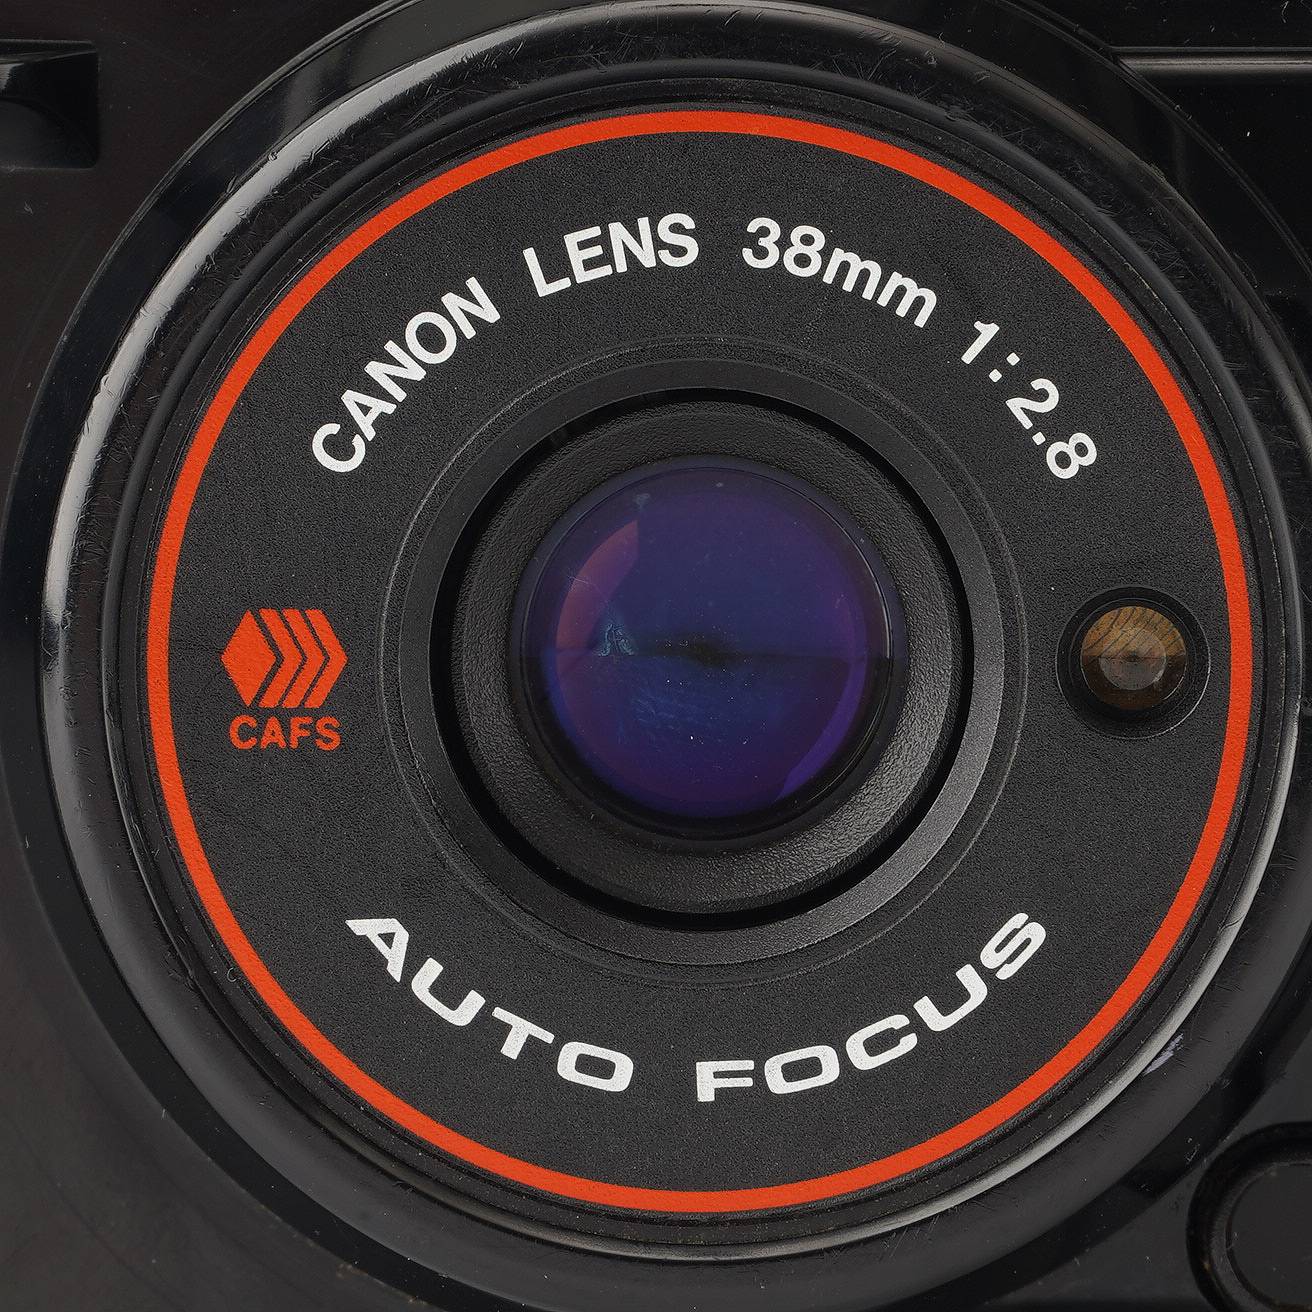 Canon LENS 38mm 1:2.8 AUTOFOCUS | www.gamutgallerympls.com